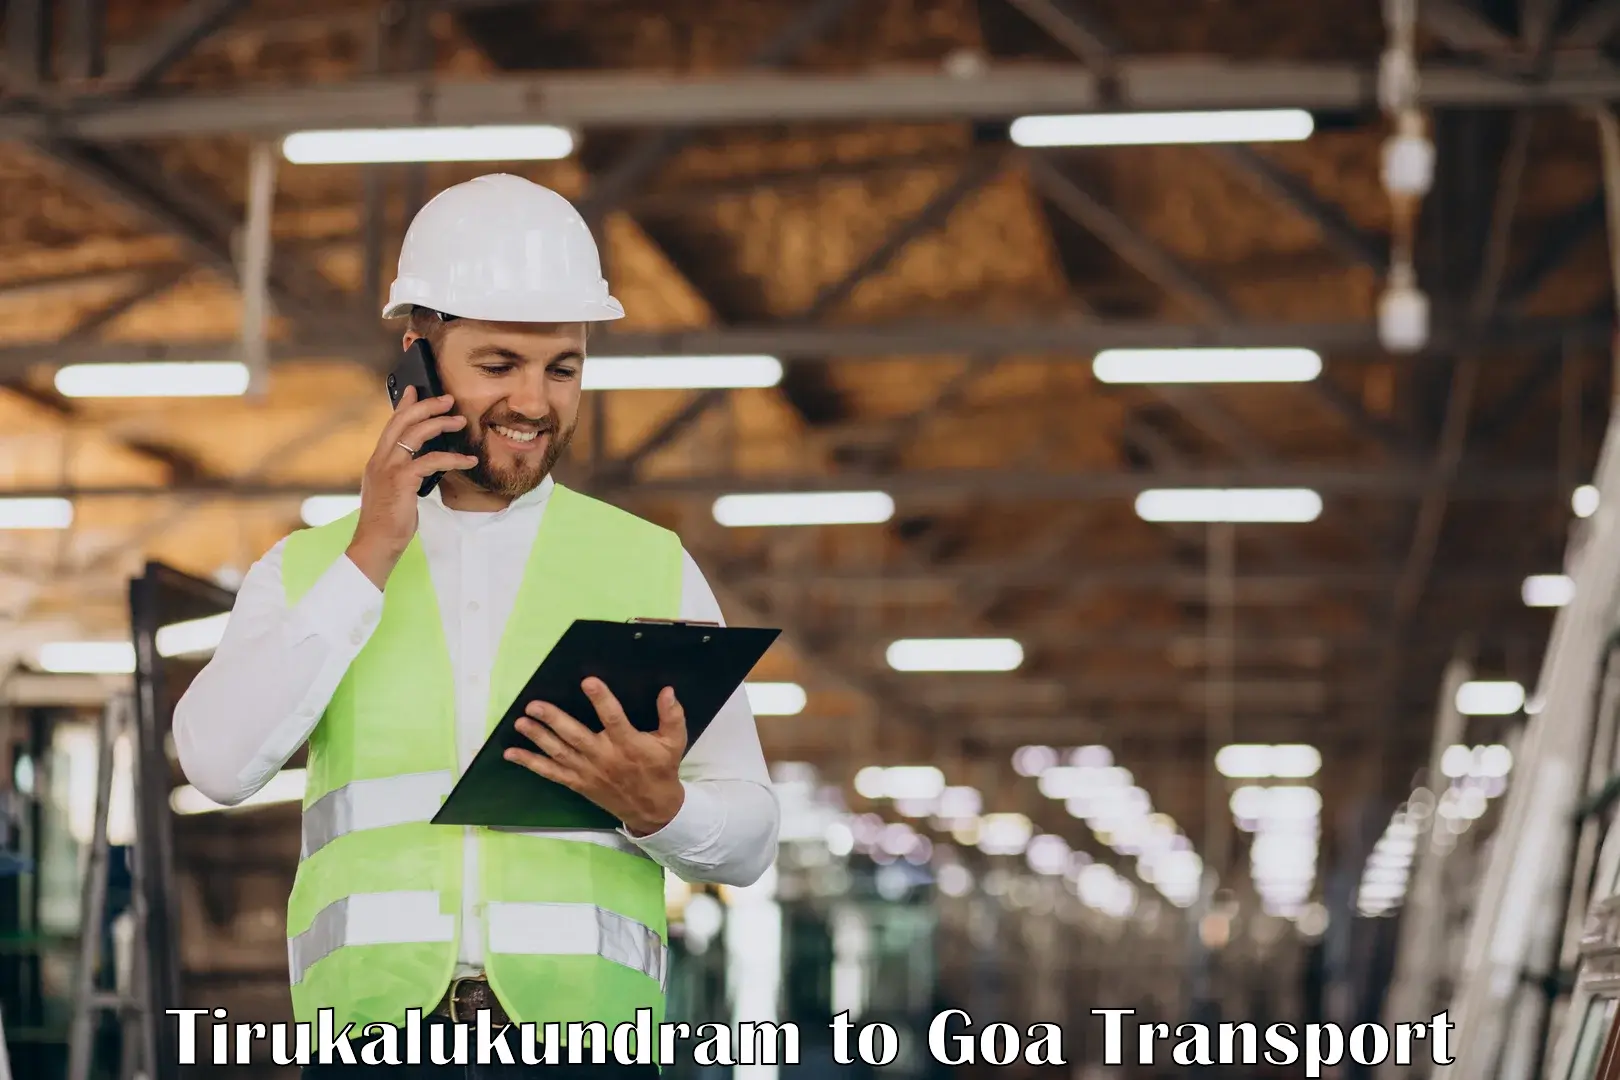 Commercial transport service Tirukalukundram to Margao